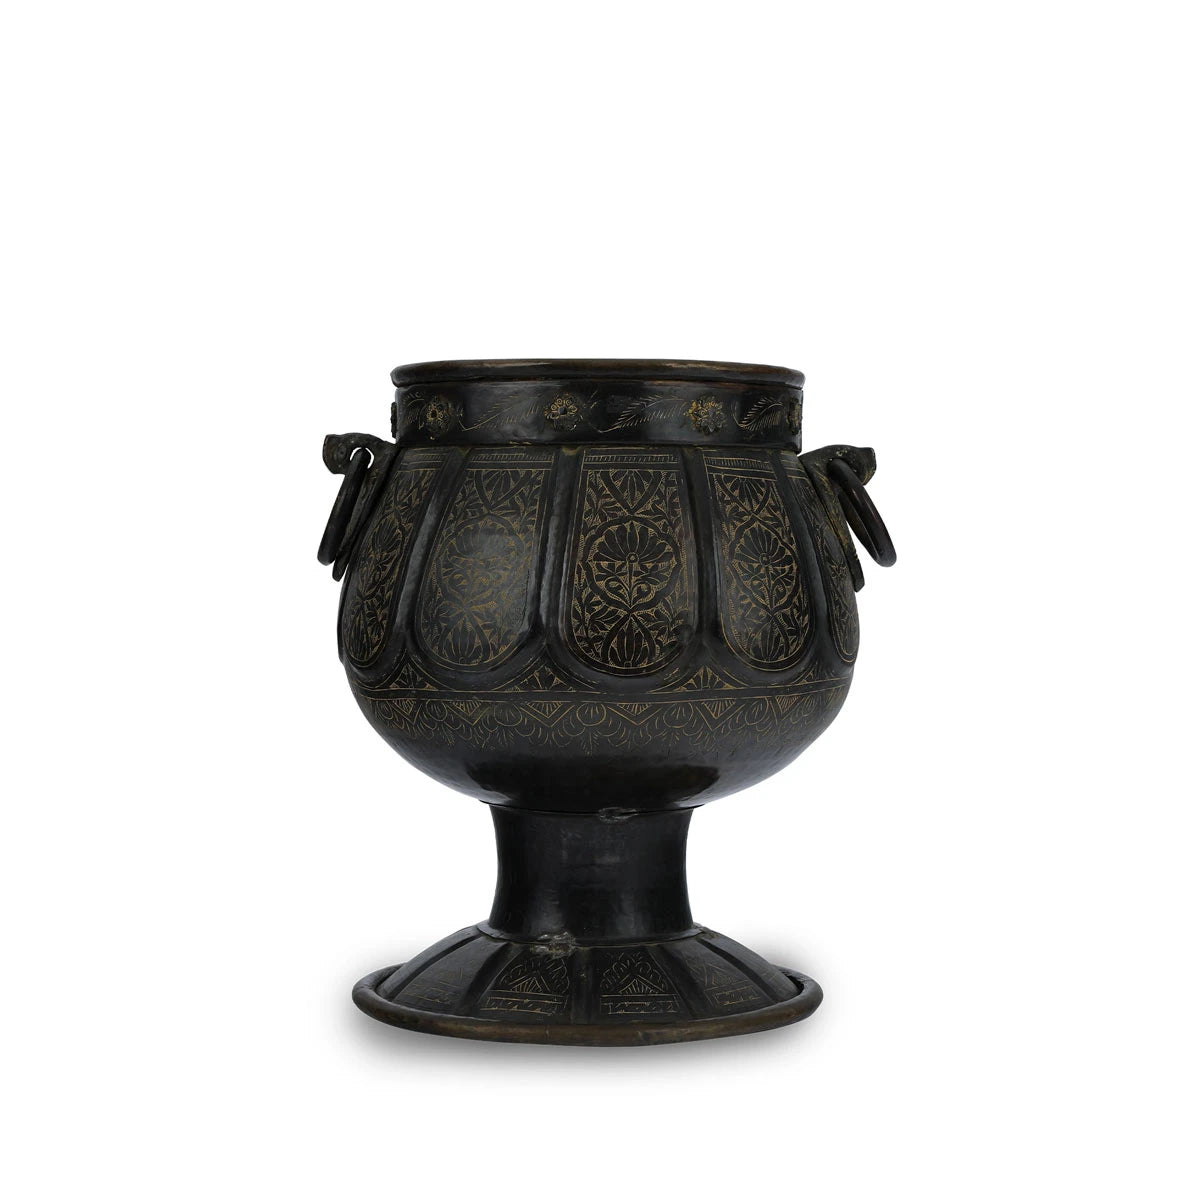 Dark Textured Handmade Large Antique Brass Planter With Pedestal Base 